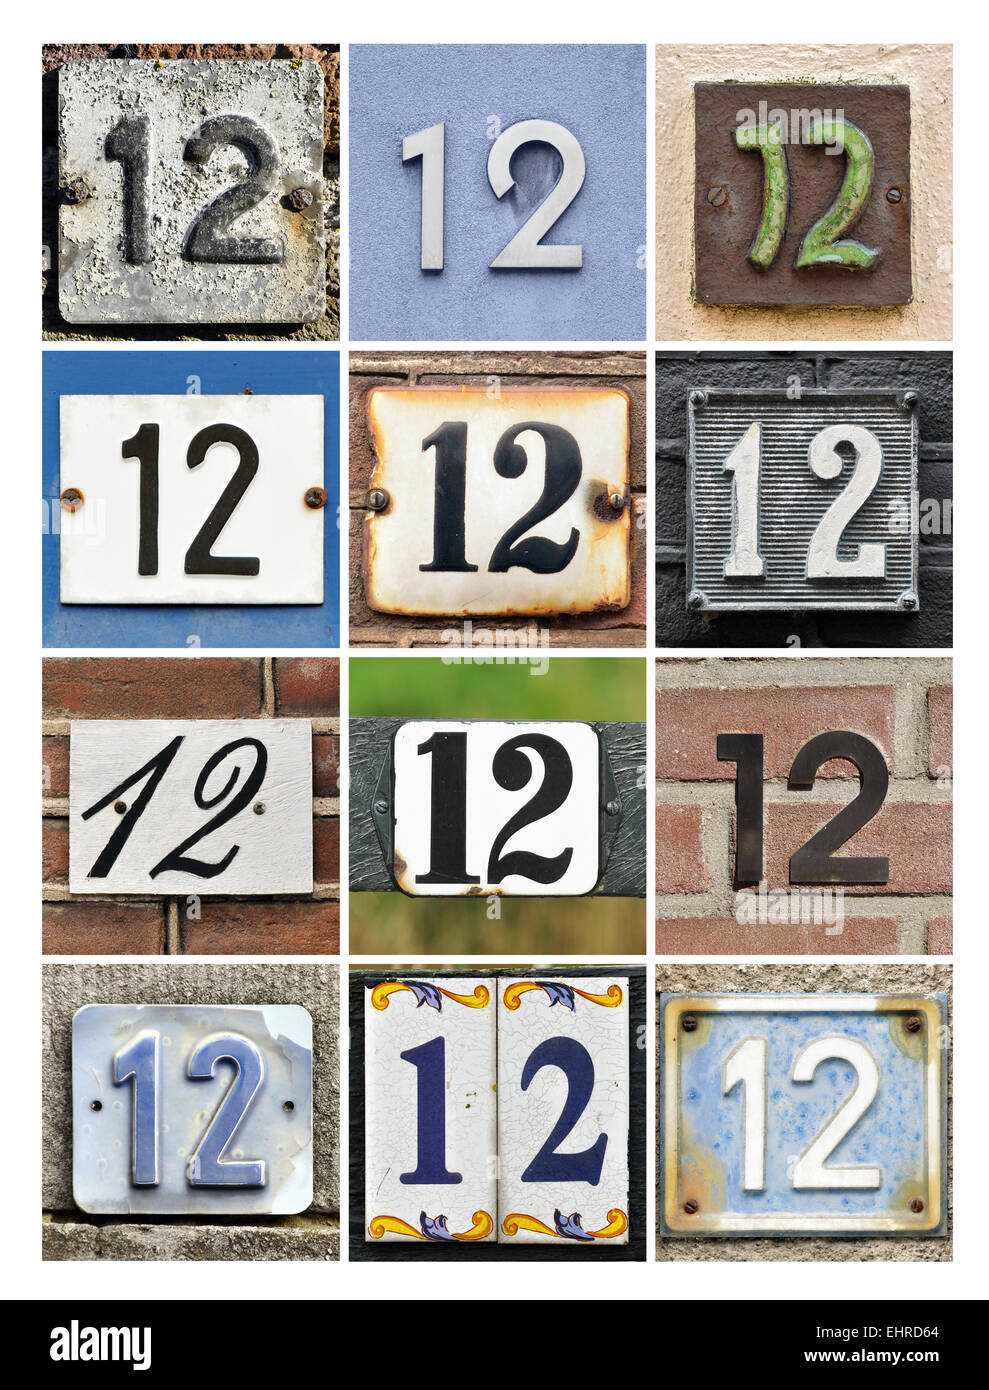 Numéro 12 - Collage de douze numéros de maison Banque D'Images